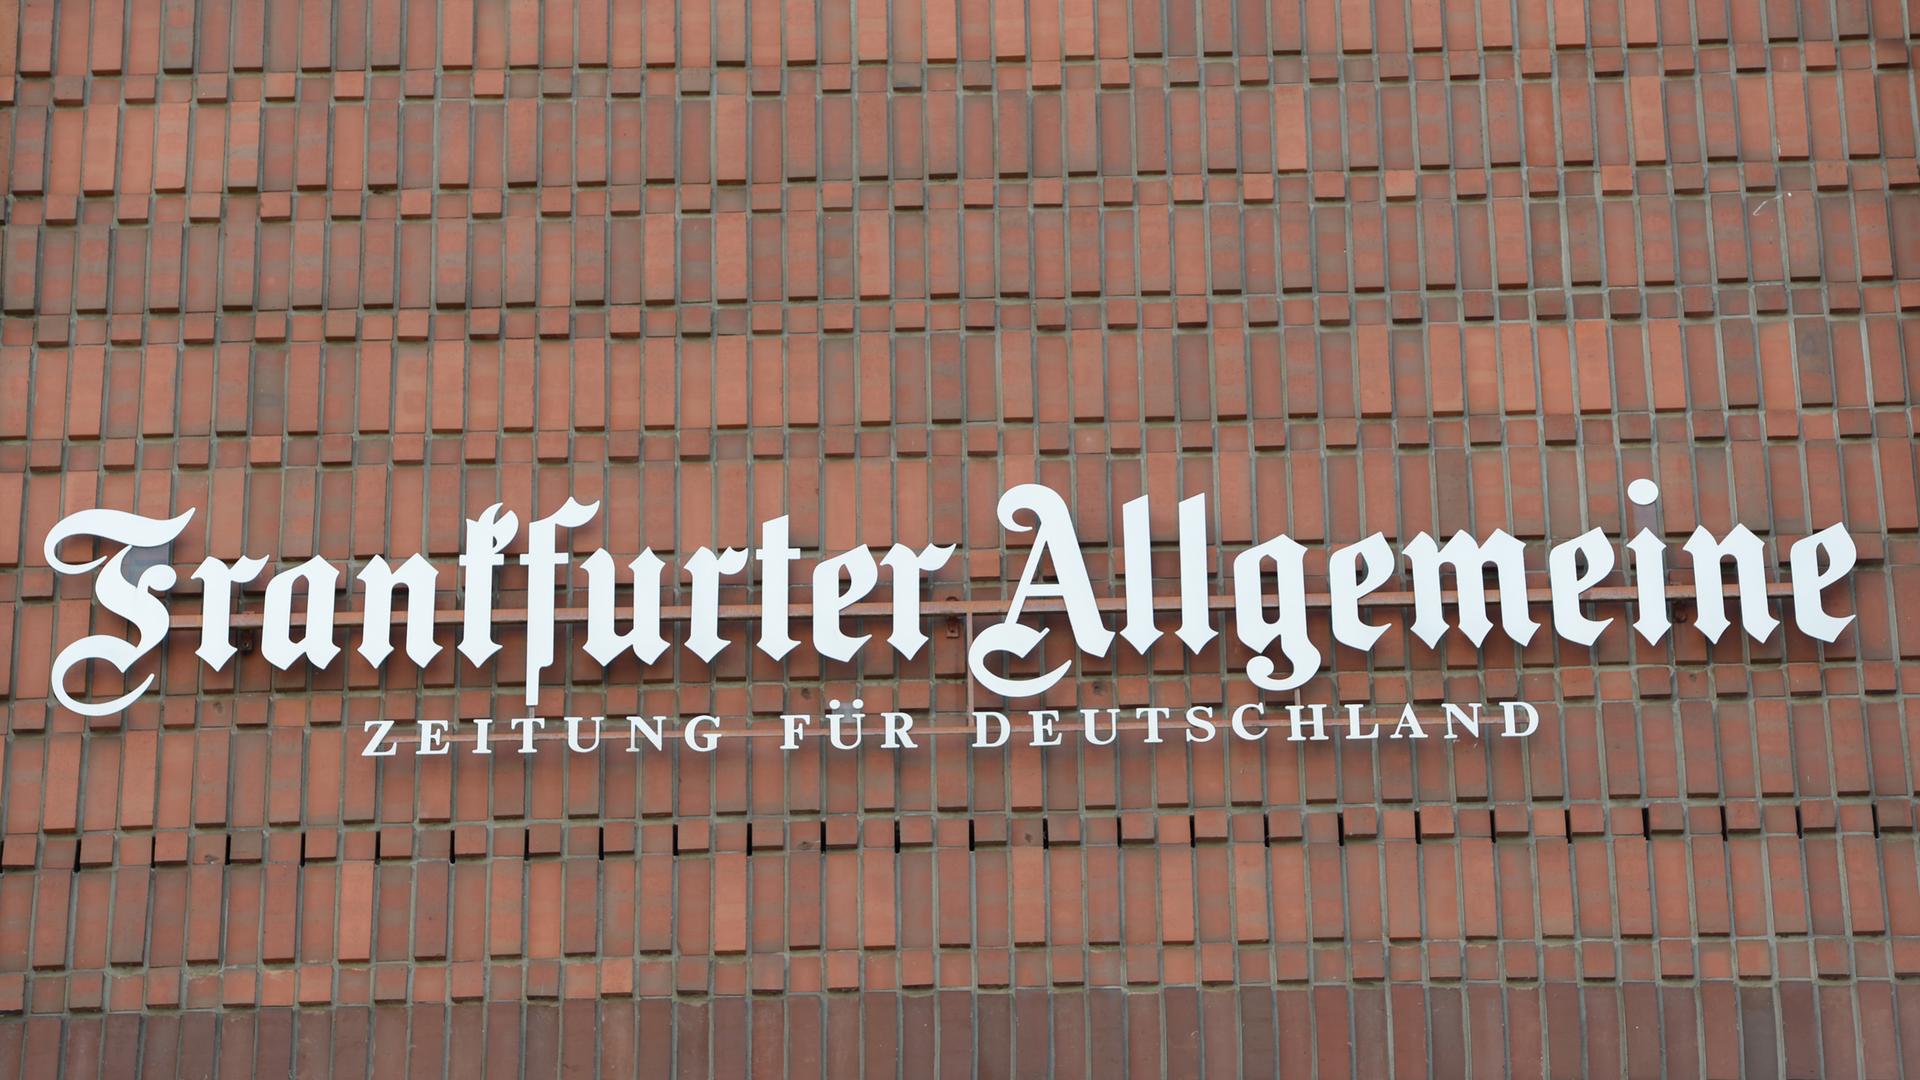 Der Schriftzug "Frankfurter Allgemeine Zeitung für Deutschland" prangt an der Fassade des Redaktionsgebäudes der "Frankfurter Allgemeinen Zeitung (FAZ)" in Frankfurt am Main.